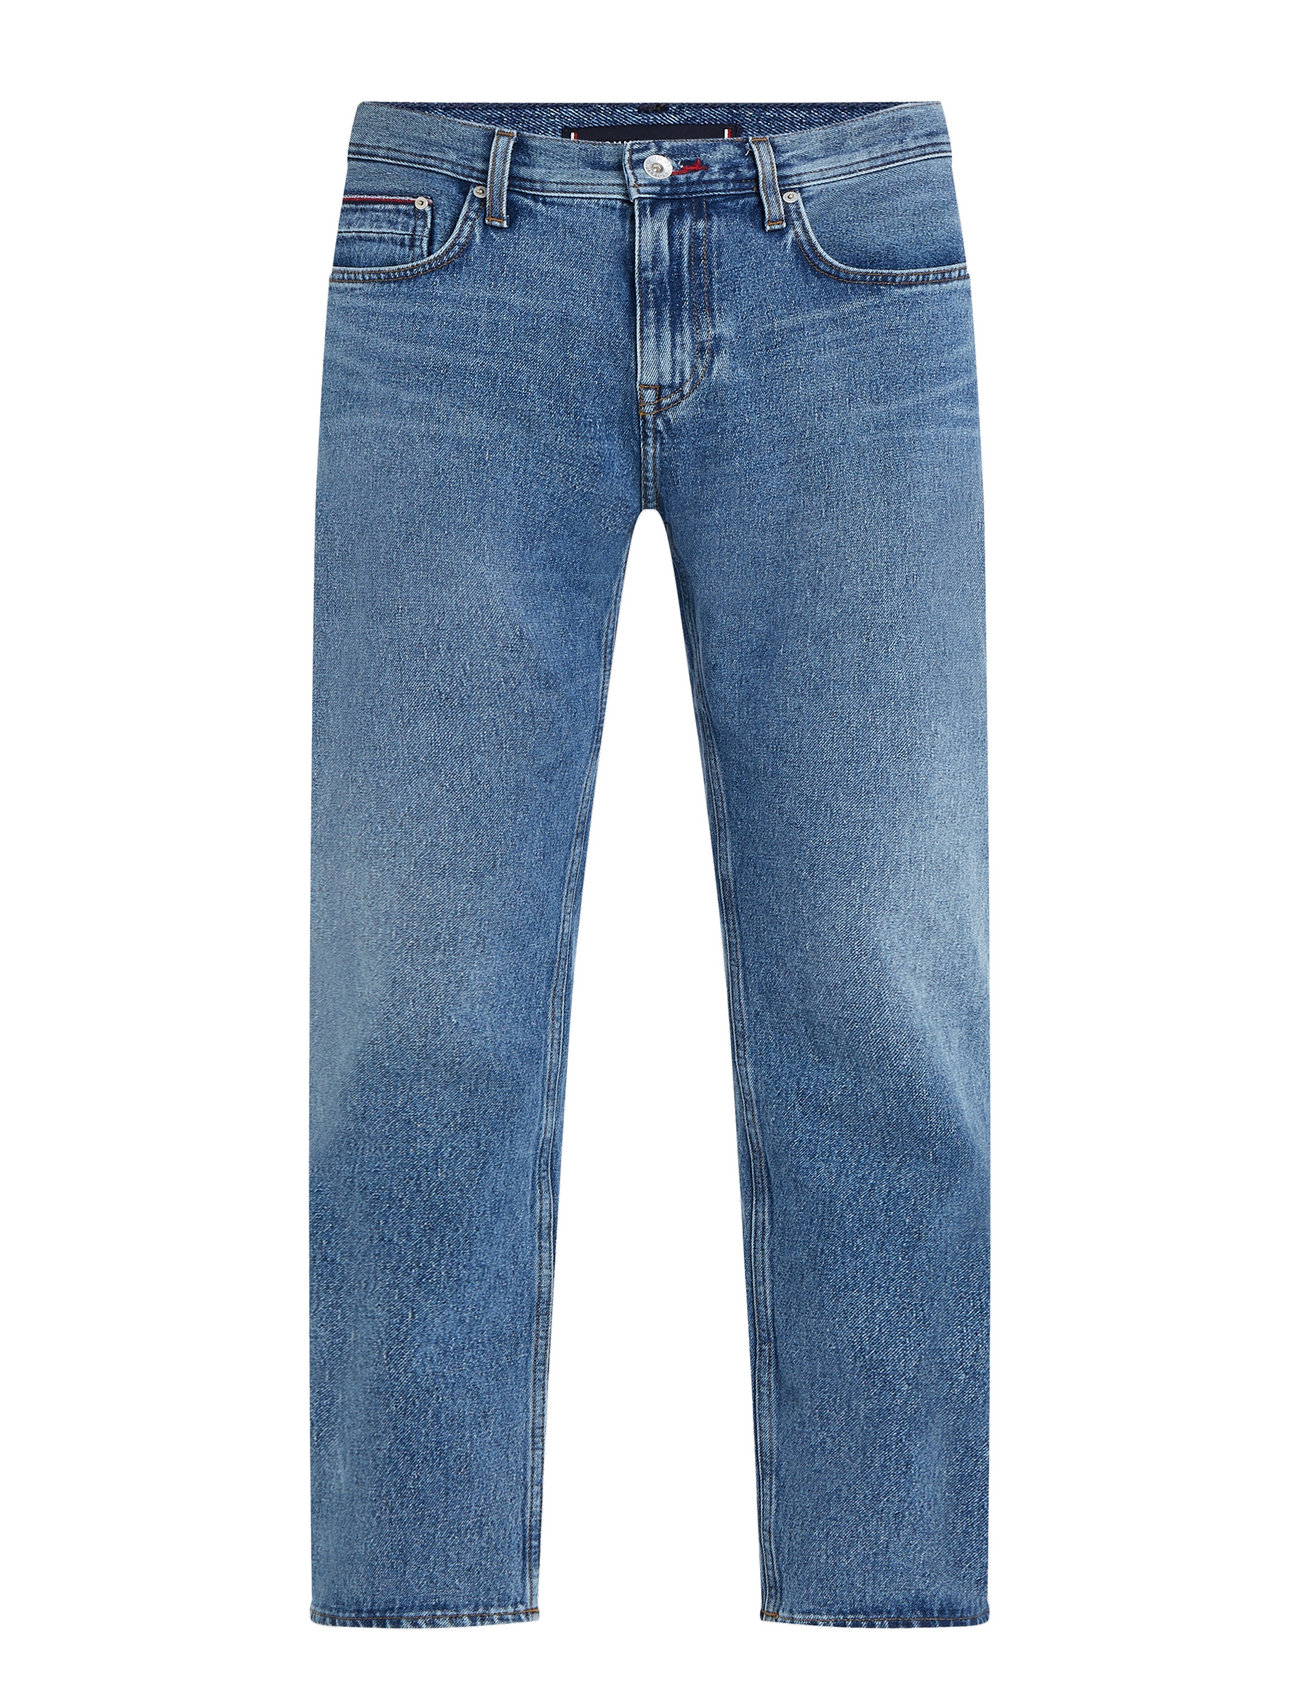 Hilfiger Straight Denton Str Calva Blue Jeans - Booztlet.com